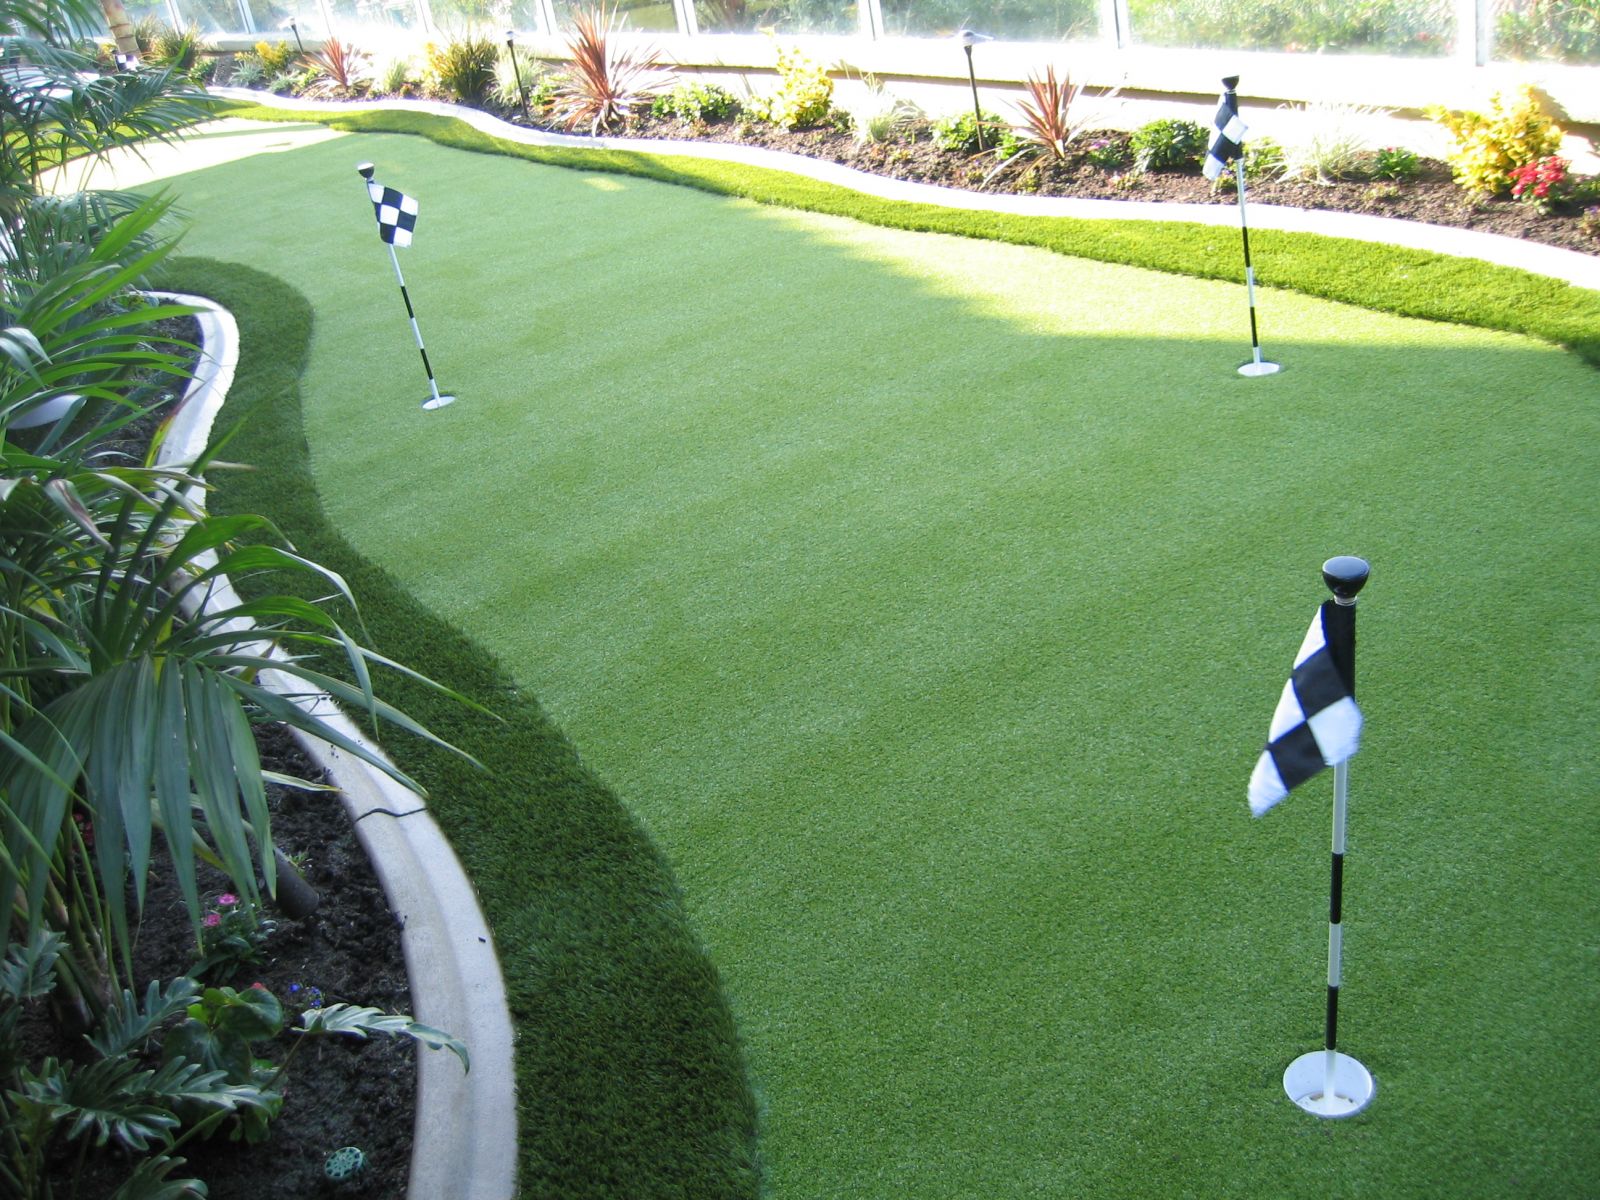 đại lý bán cỏ nhân tạo sân golf